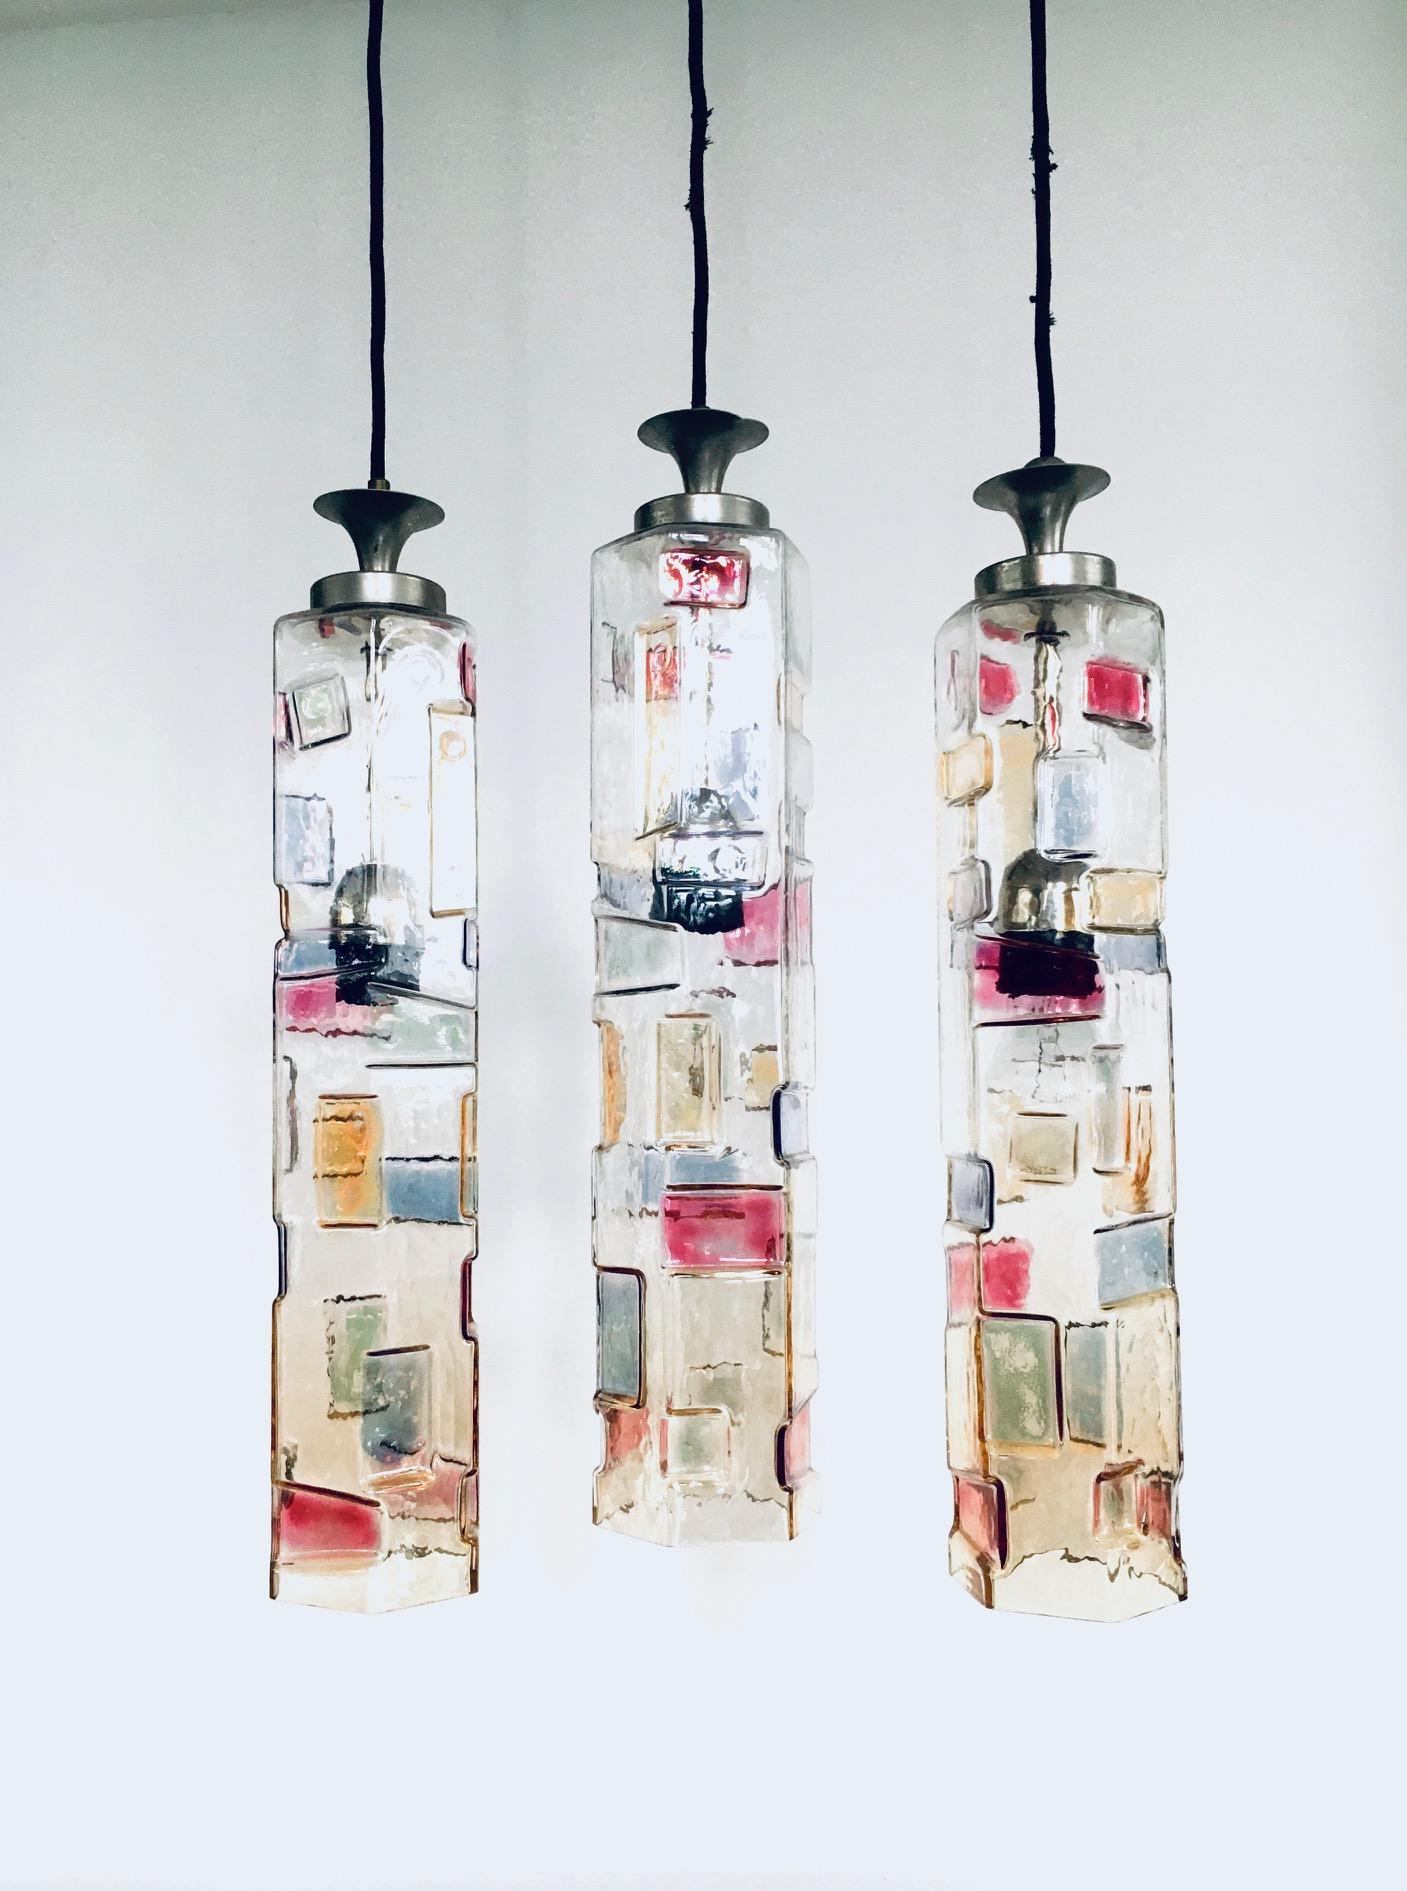 Vintage Midcentury Modern Italian Design Poliarte Colored Glass Pendant Lamp set of 3, Poliarte, Italy 1950's - 1955. Tube de verre hexagonal. 3 Dimensionnel avec des motifs colorés. Lampes très RARE. 3 lampes à suspension séparées. Tout le verre